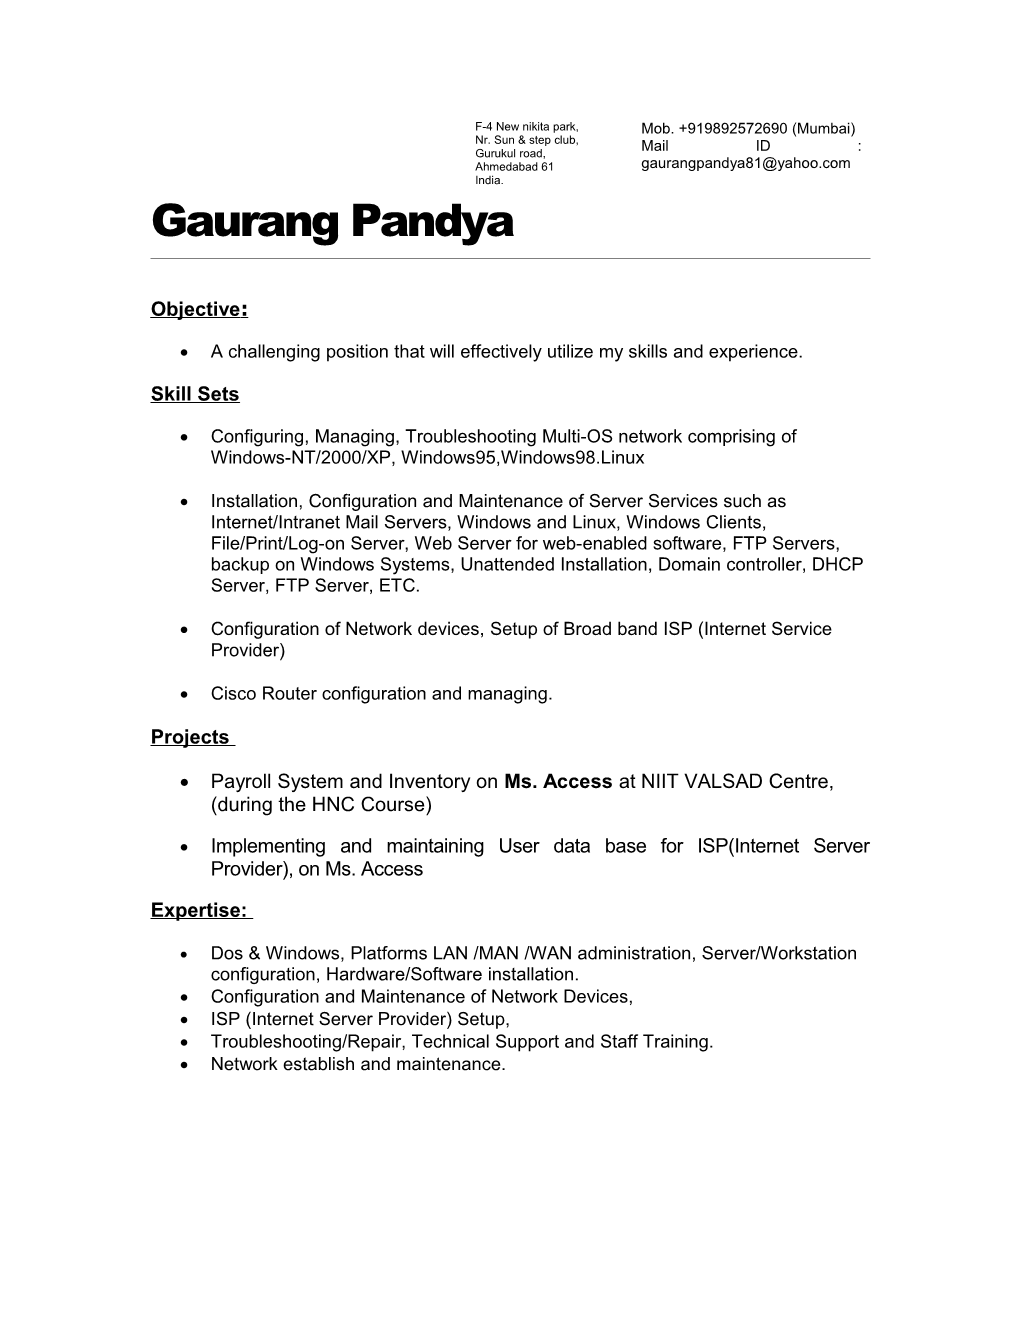 Gaurang Pandya